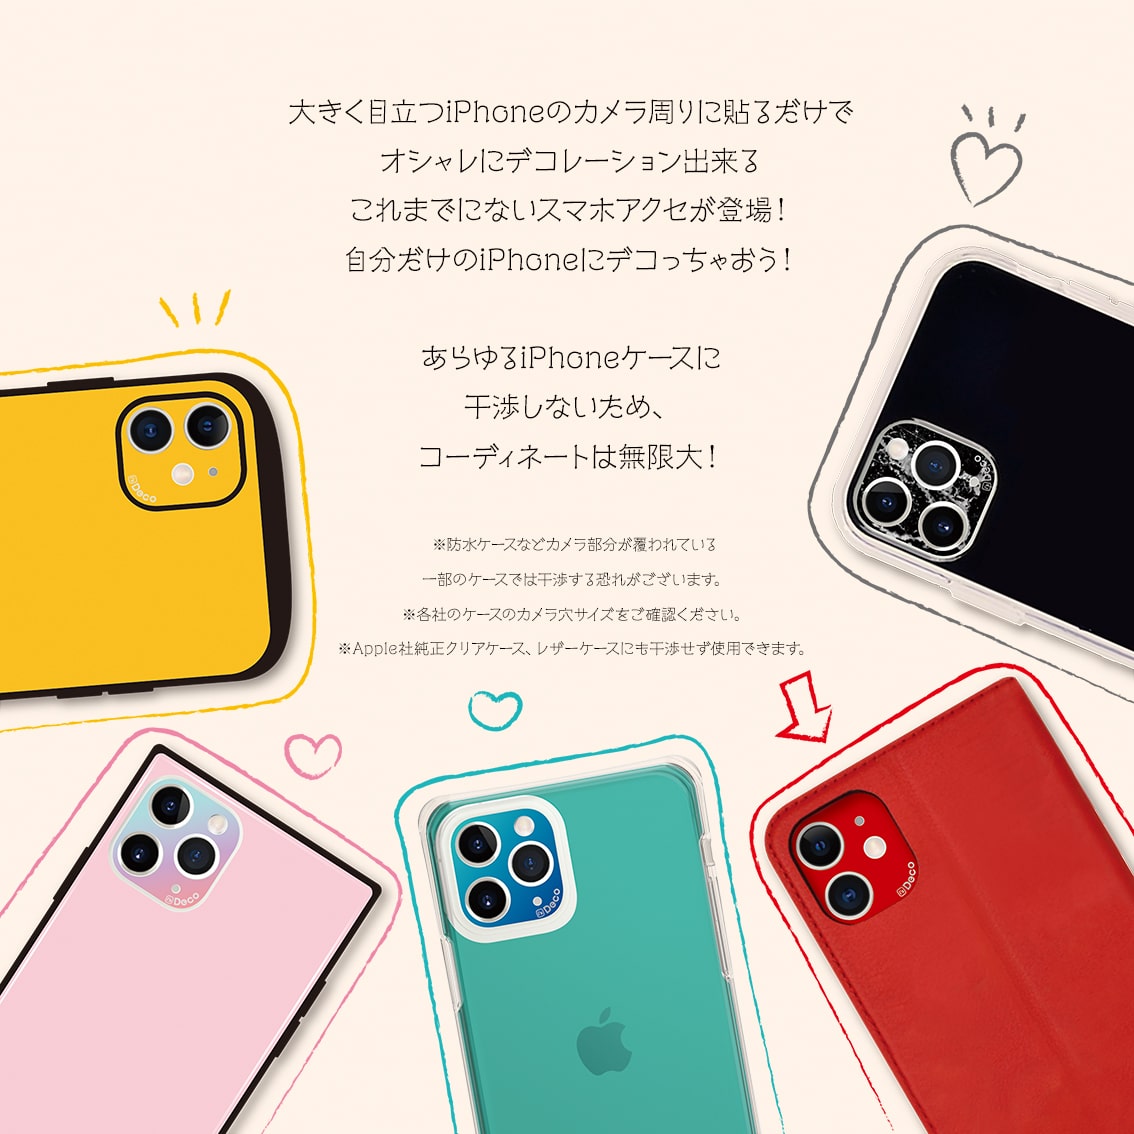 iPhone 11 Pro/11 Pro Max i's Deco  [STANDARD COLOR (B05-B08)］